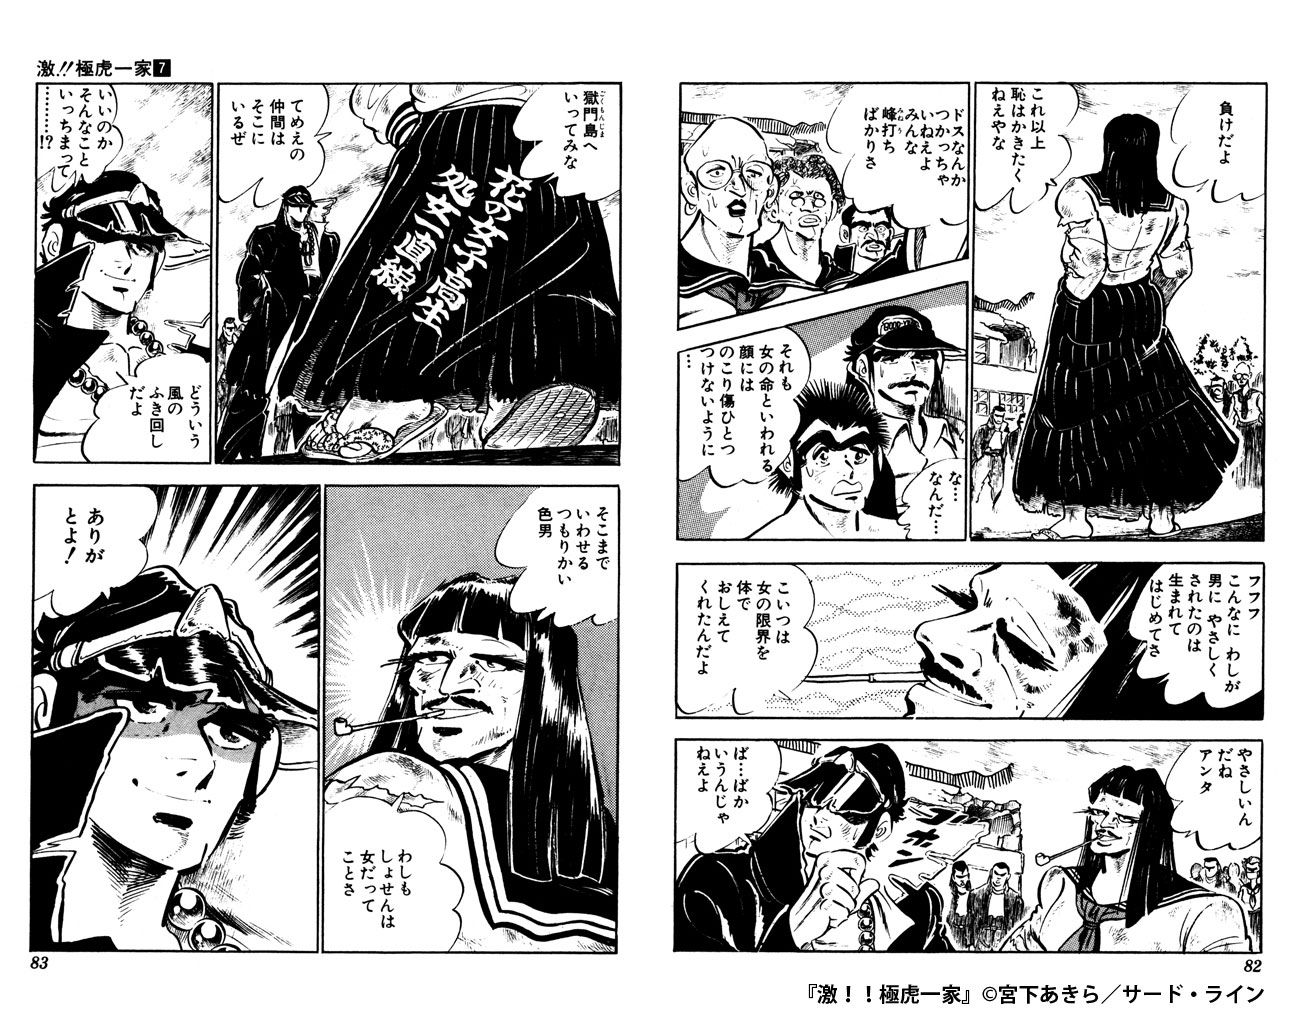 マンガを掘りつくせ Manga Diggin Vol 5 5 激 極虎一家 Part2 ソニーの電子書籍ストア Reader Store